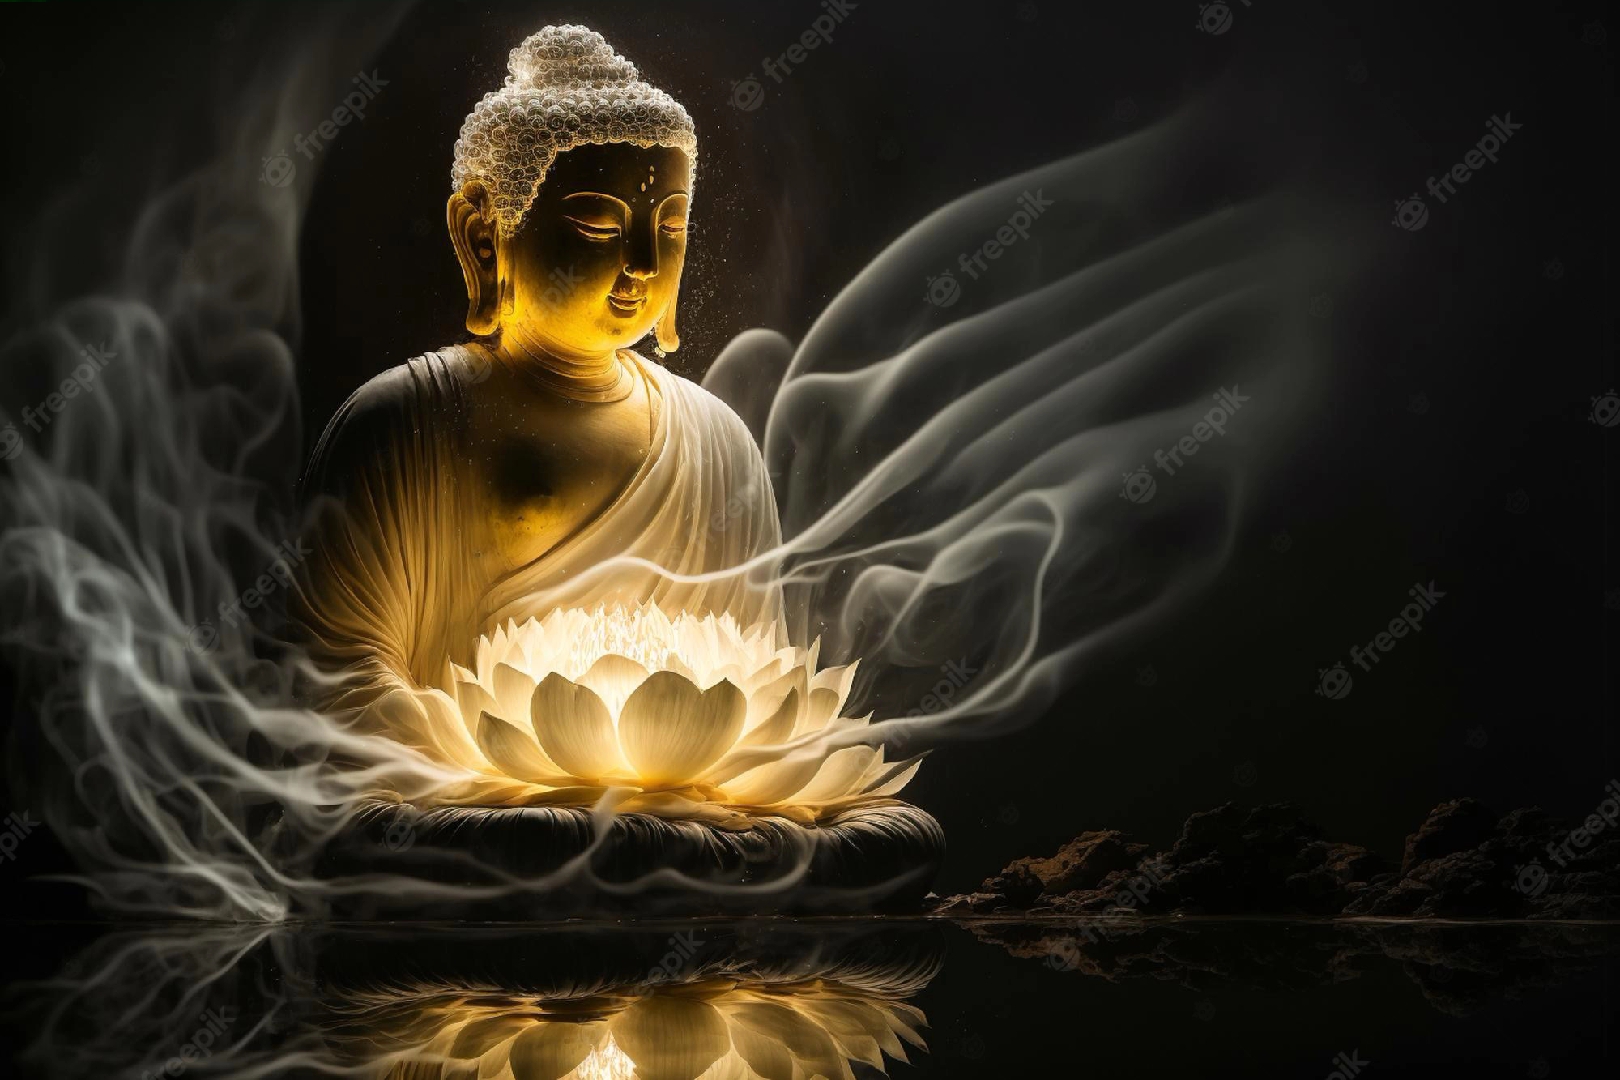 Hình nền Phật cho iPhone, giúp tâm trí của mọi người luôn được an yên